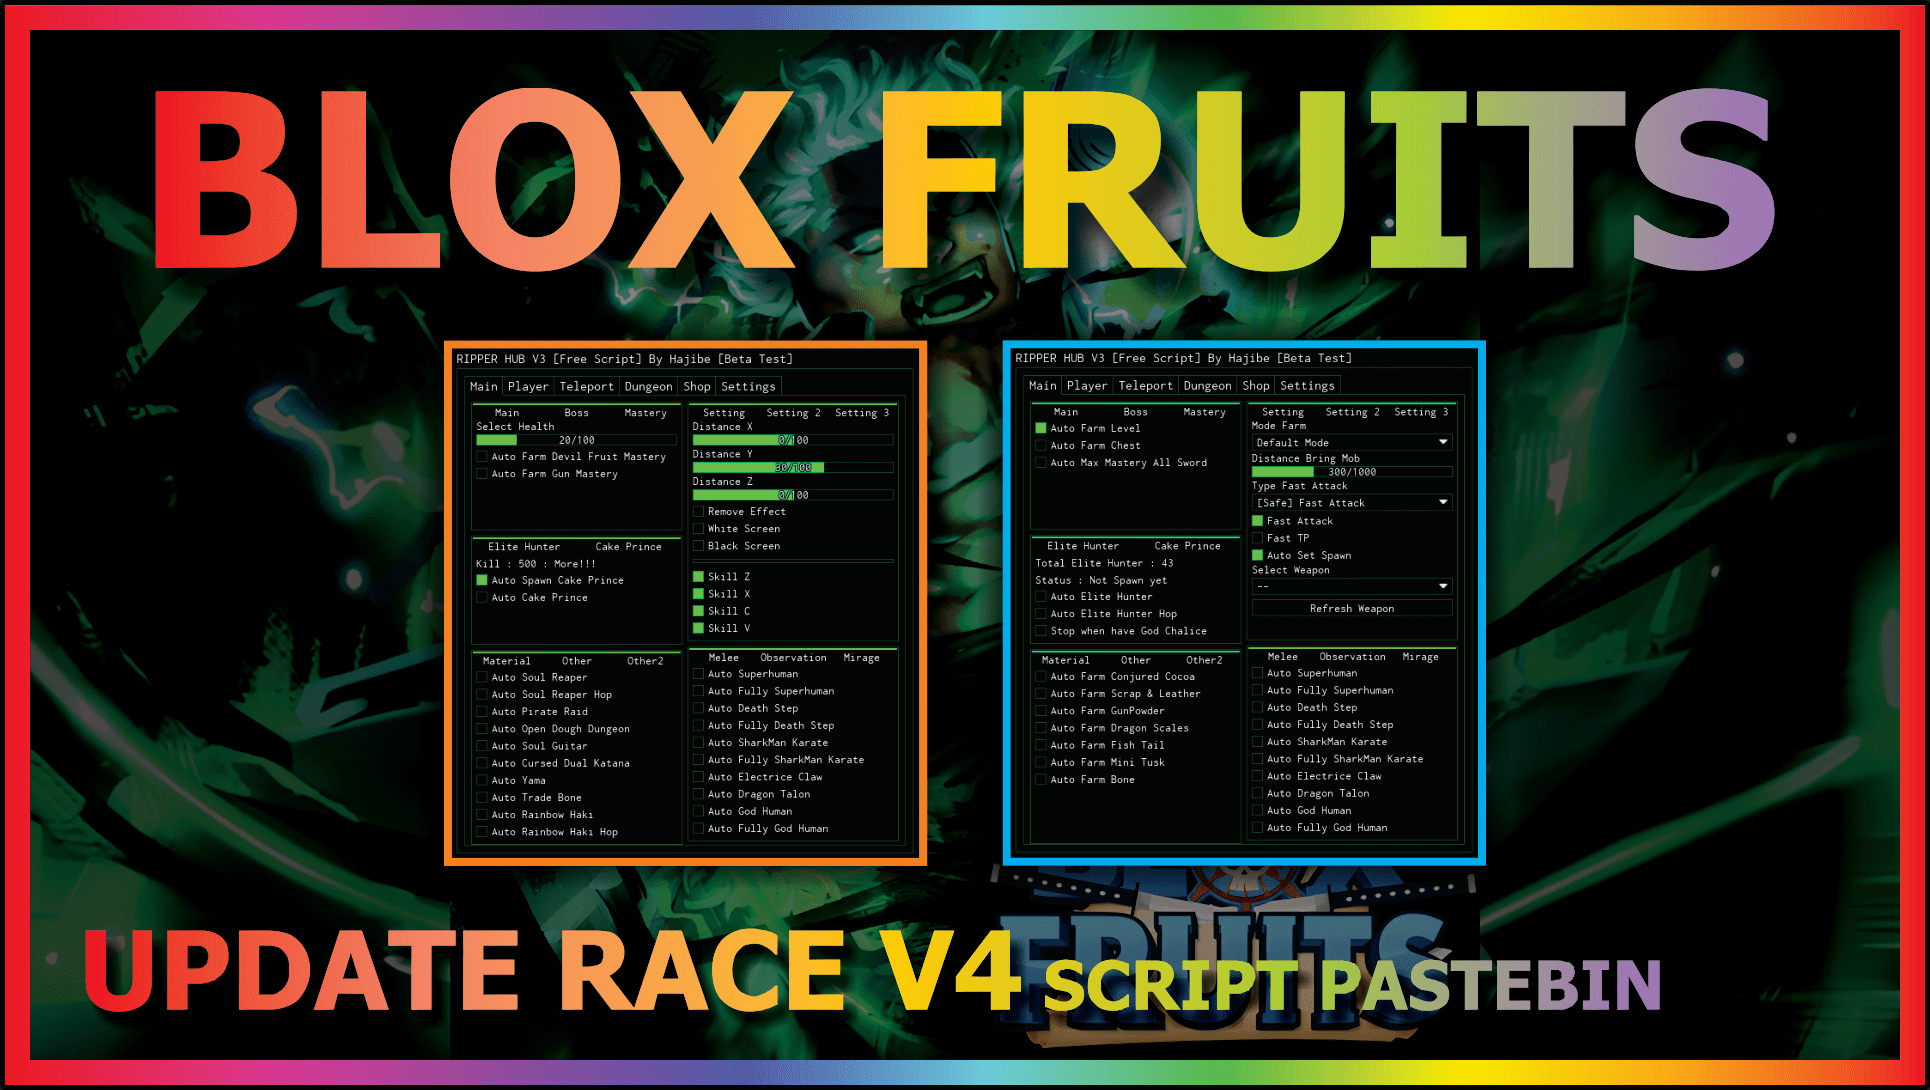 Blox Fruit Script Update 20 No Key AUTO FARM & FRUIT RAIN ! SARA